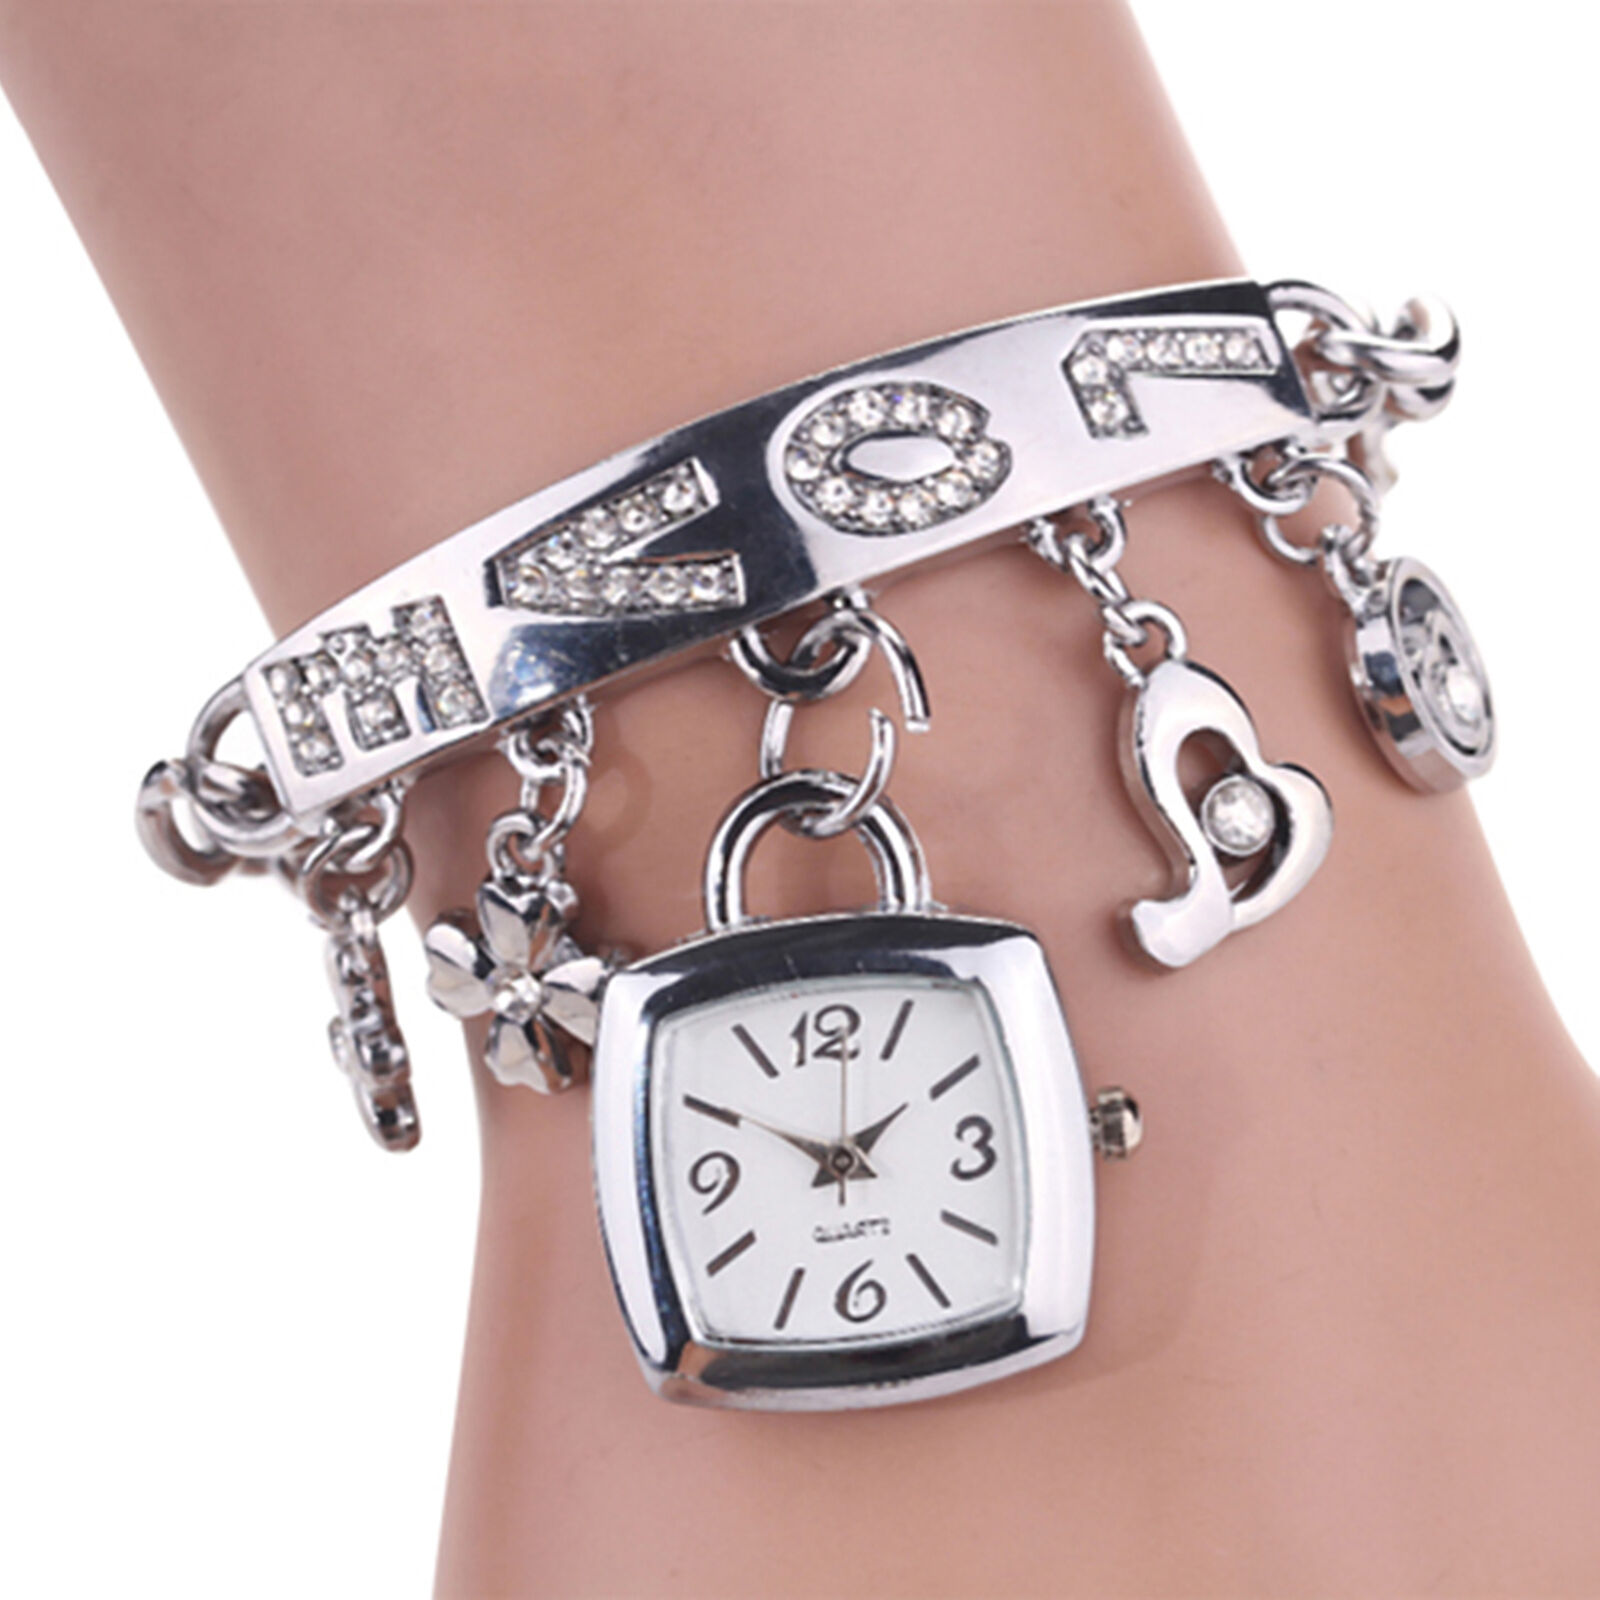 Jewelry Wristwatch Wear-resistant Shiny Surface Stylish Quartz Bracelet Watch Unbranded